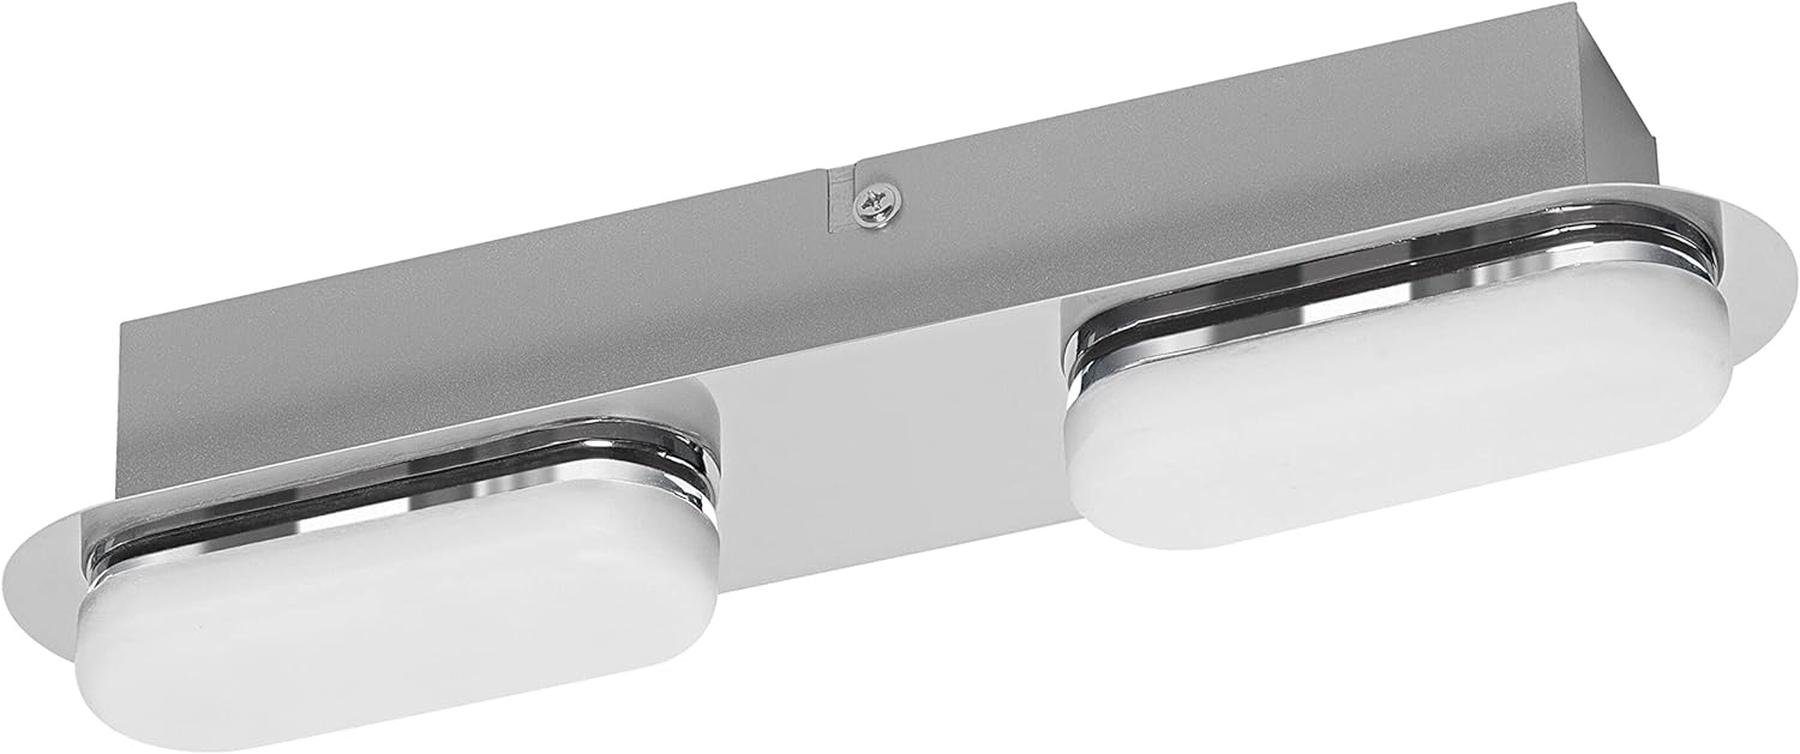 Ledvance LED Einbauleuchte Ledvance Smart LED Badezimmerlampe chrome, 15W,30 cm